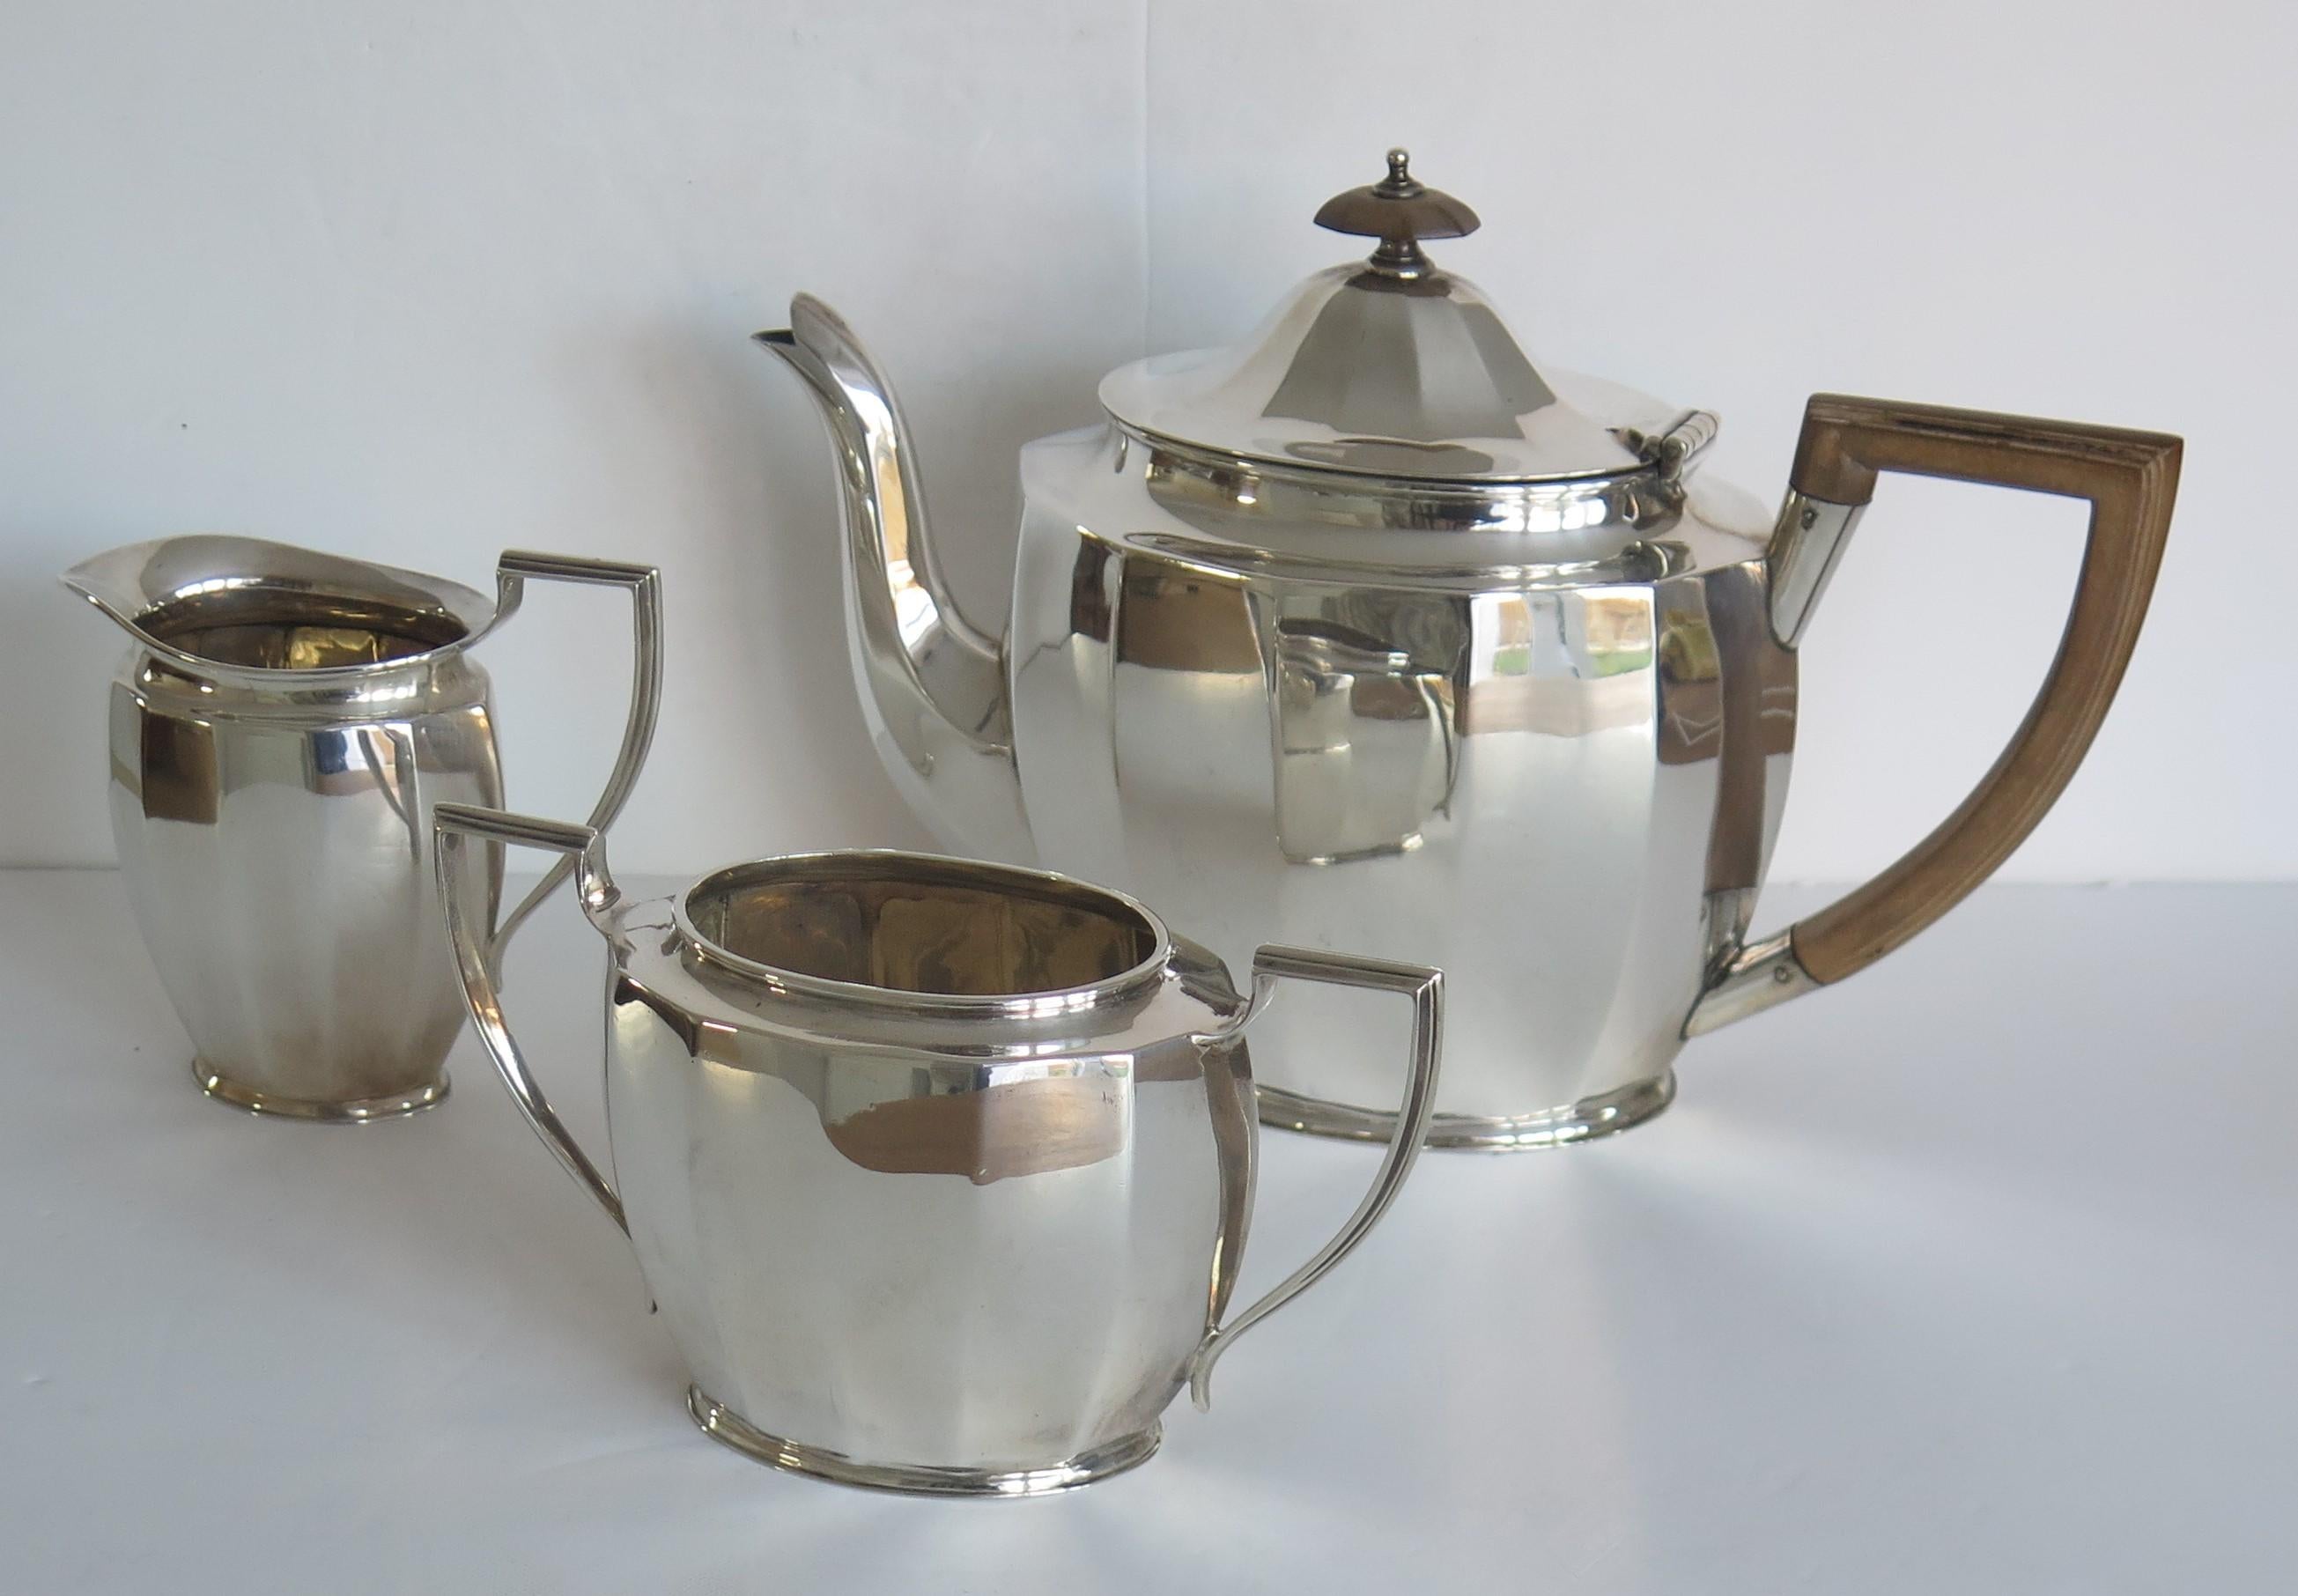 Il s'agit d'une belle qualité en argent sterling, période Art Déco, service à thé 3 pièces composé d'une théière, d'un pot à lait et d'un sucrier, fabriqué par Cooper Brothers & Sons de Sheffield, Angleterre en 1930.

Toutes les pièces ont une